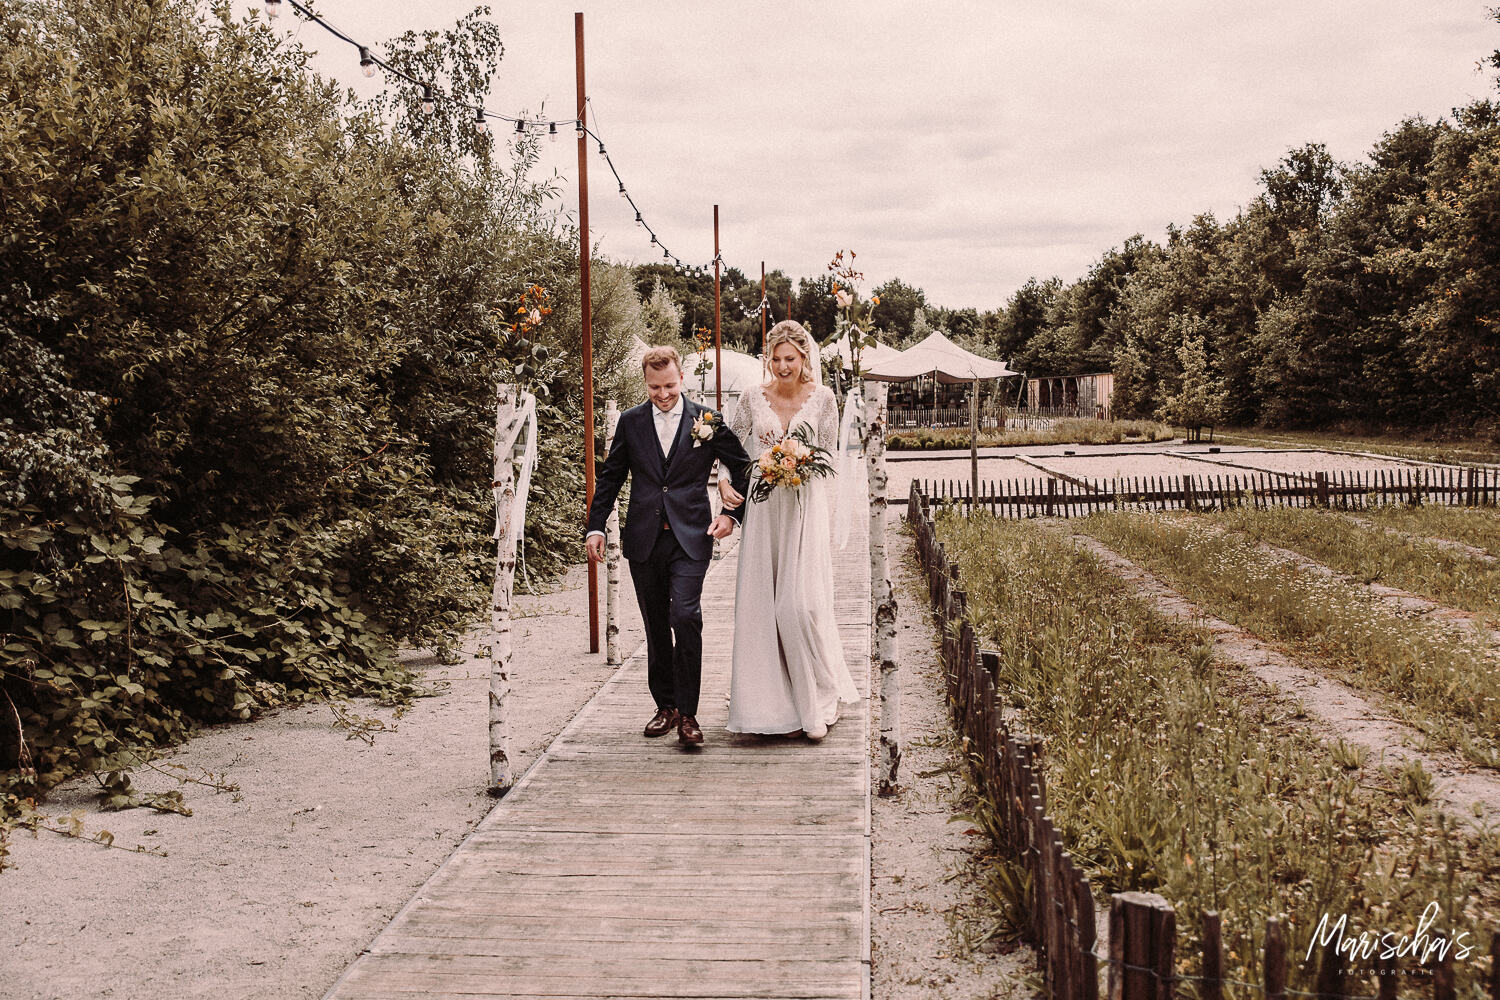 Bruidsfotograaf voor een bruiloft bij het houtse meer in Den hout Noord Brabant